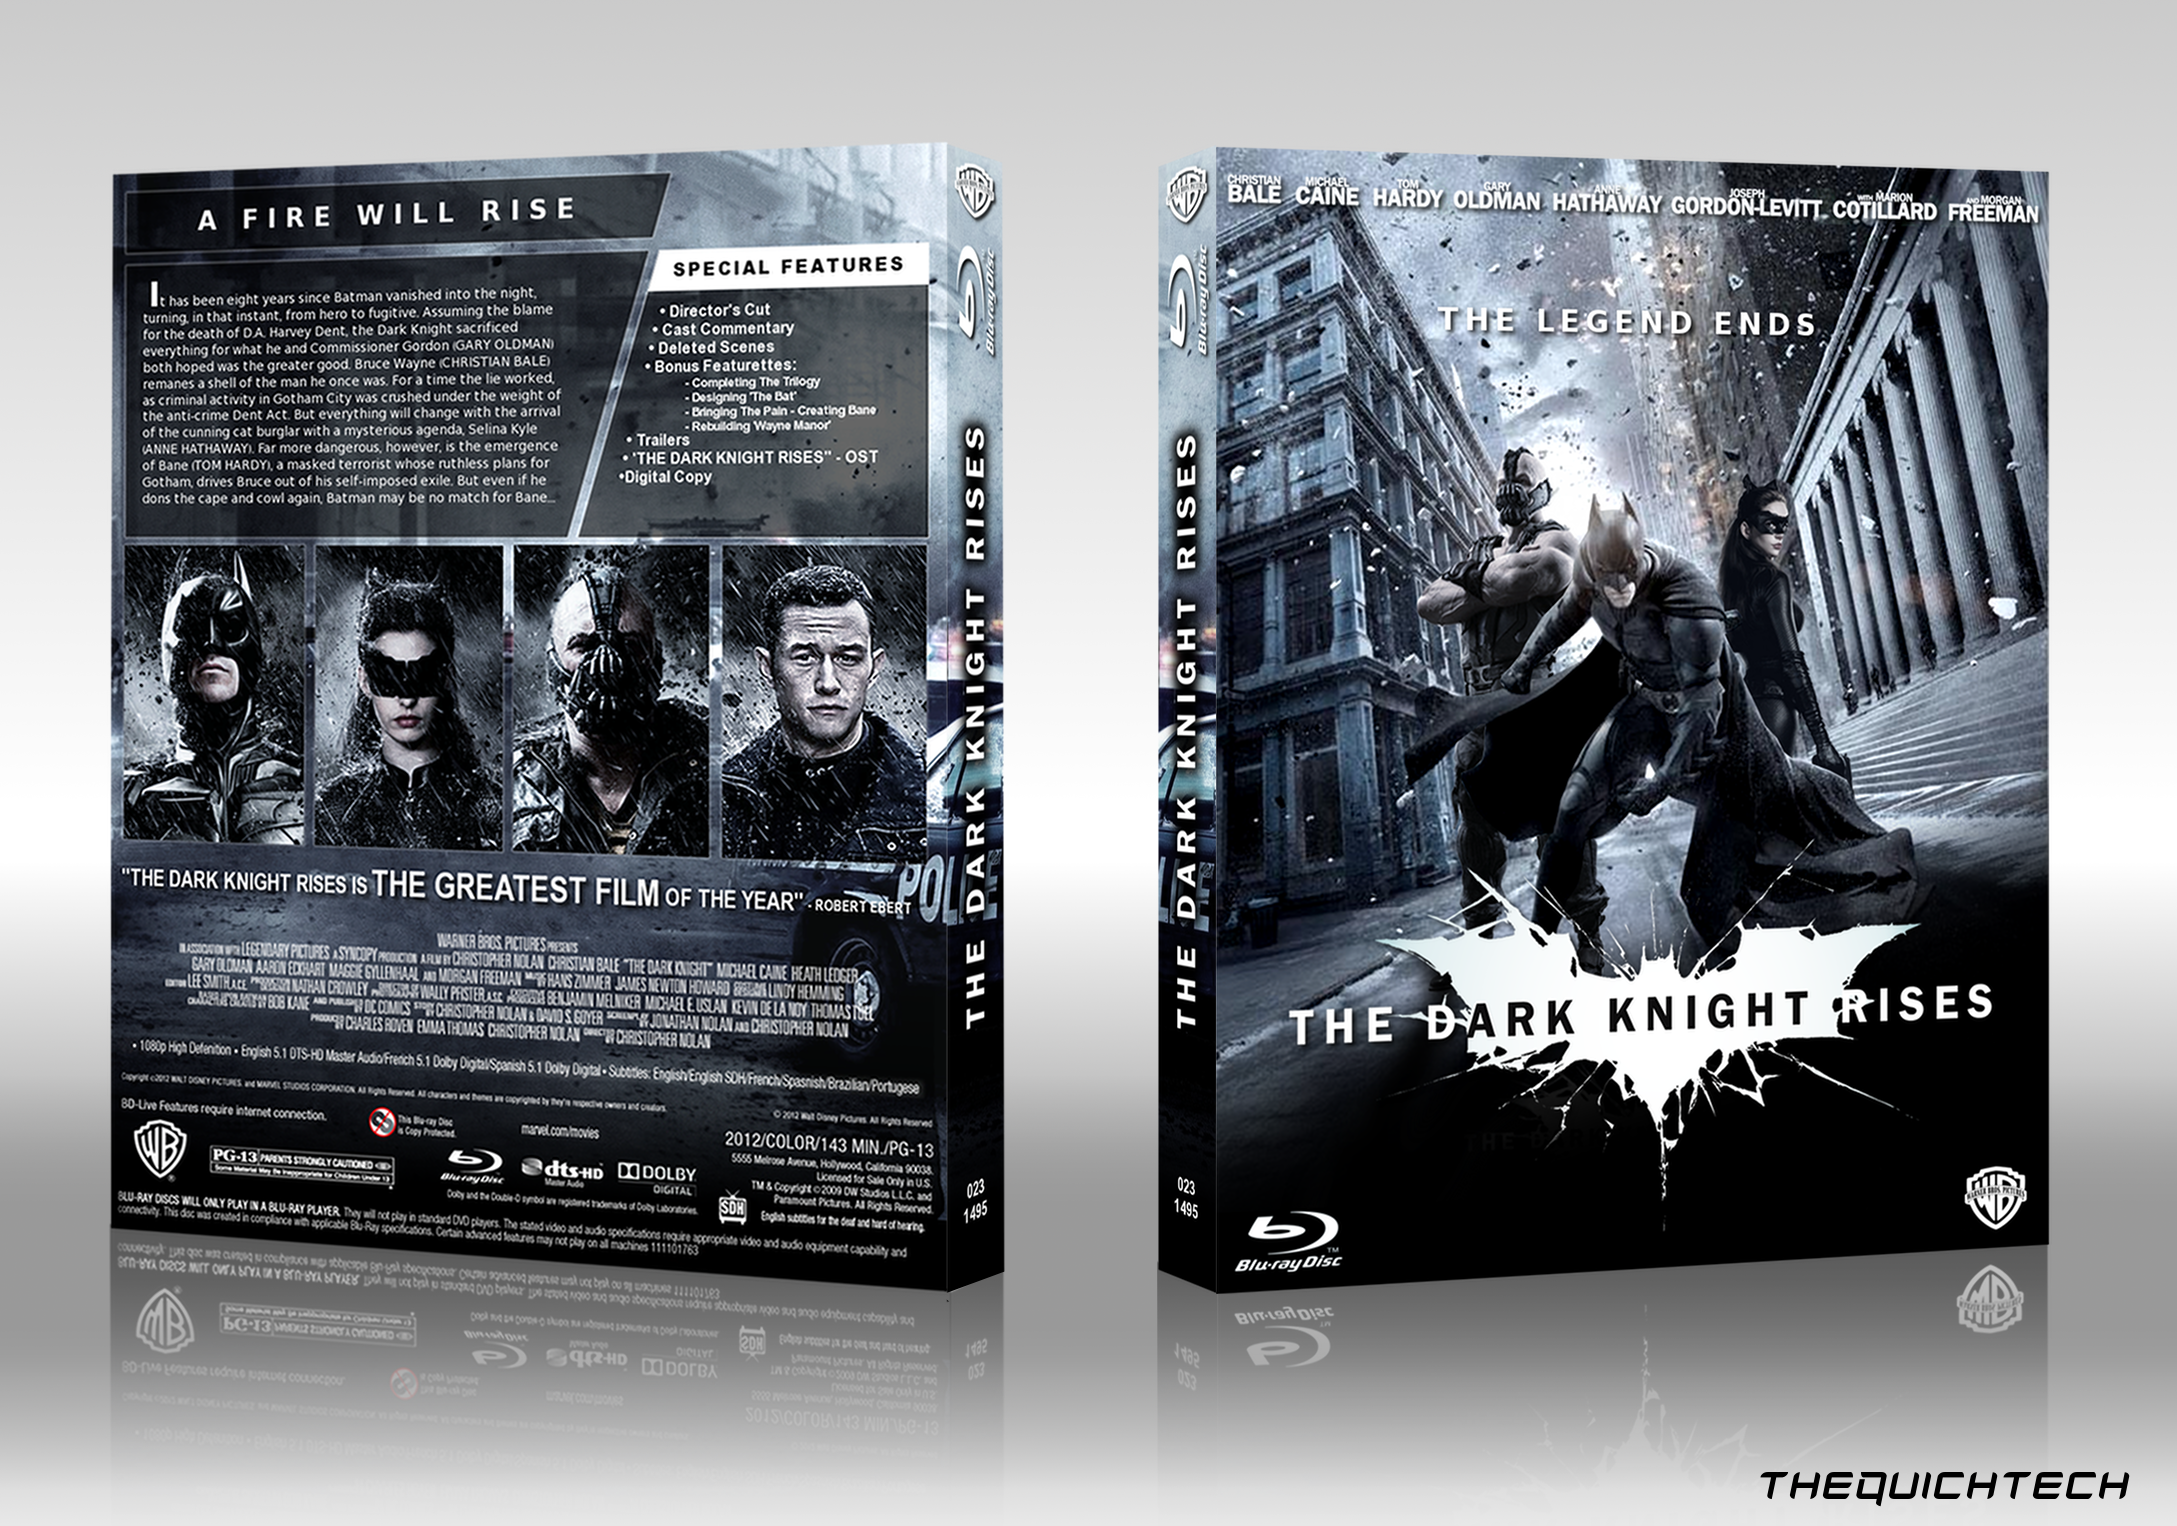 The Dark Knight Rises box cover